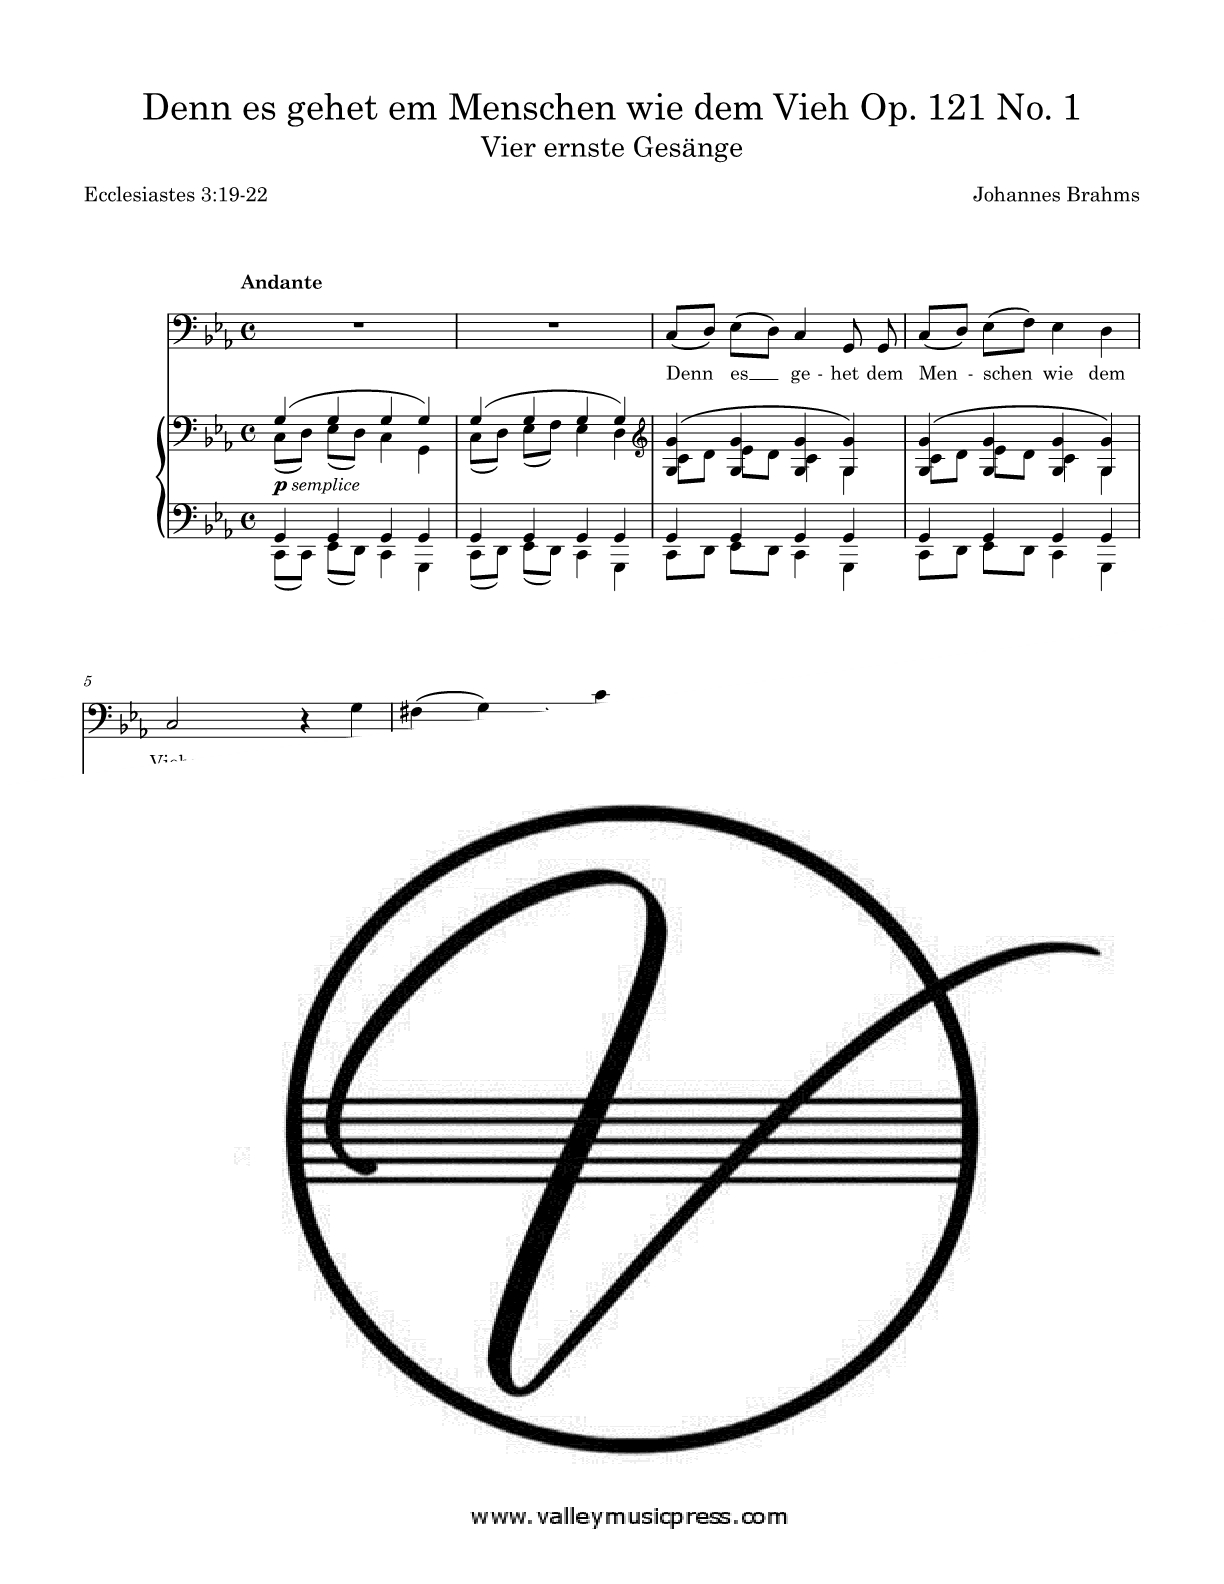 Brahms - Denn es gehet dem Menschen Op. 121 No. 1 (Voice) - Click Image to Close